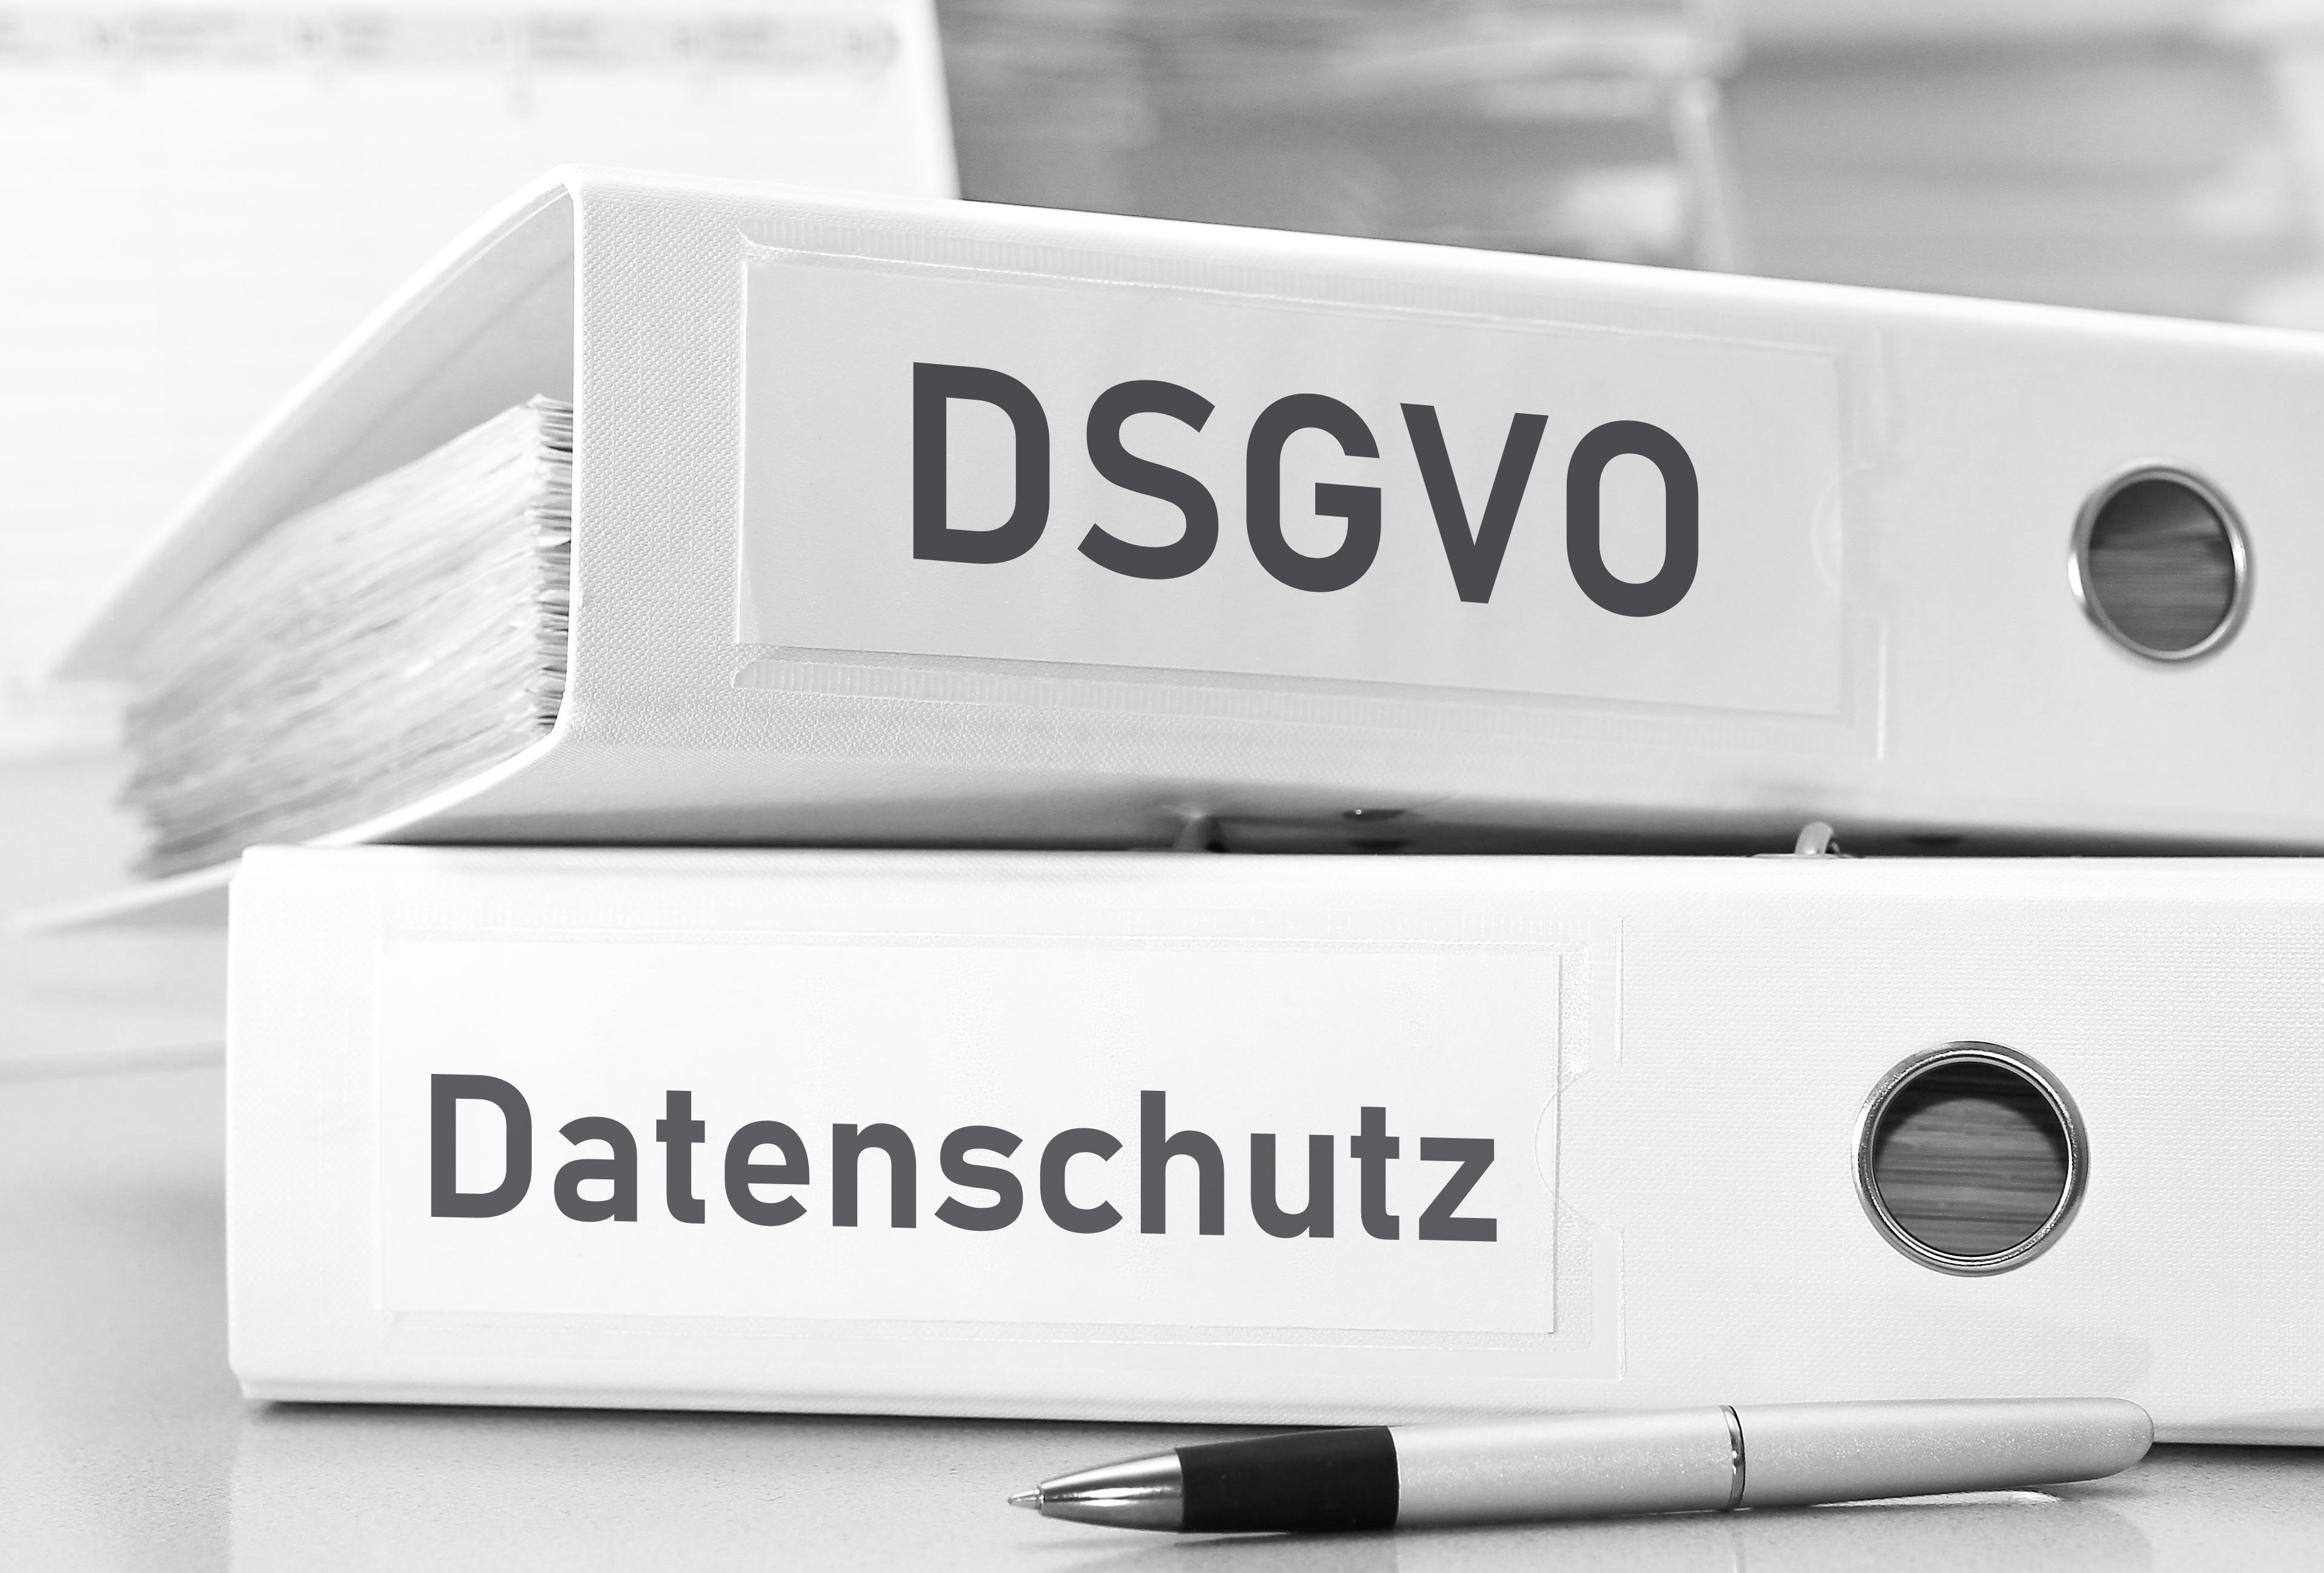 UC Cloud Act vs DSGVO - Shutterstock / staukestock